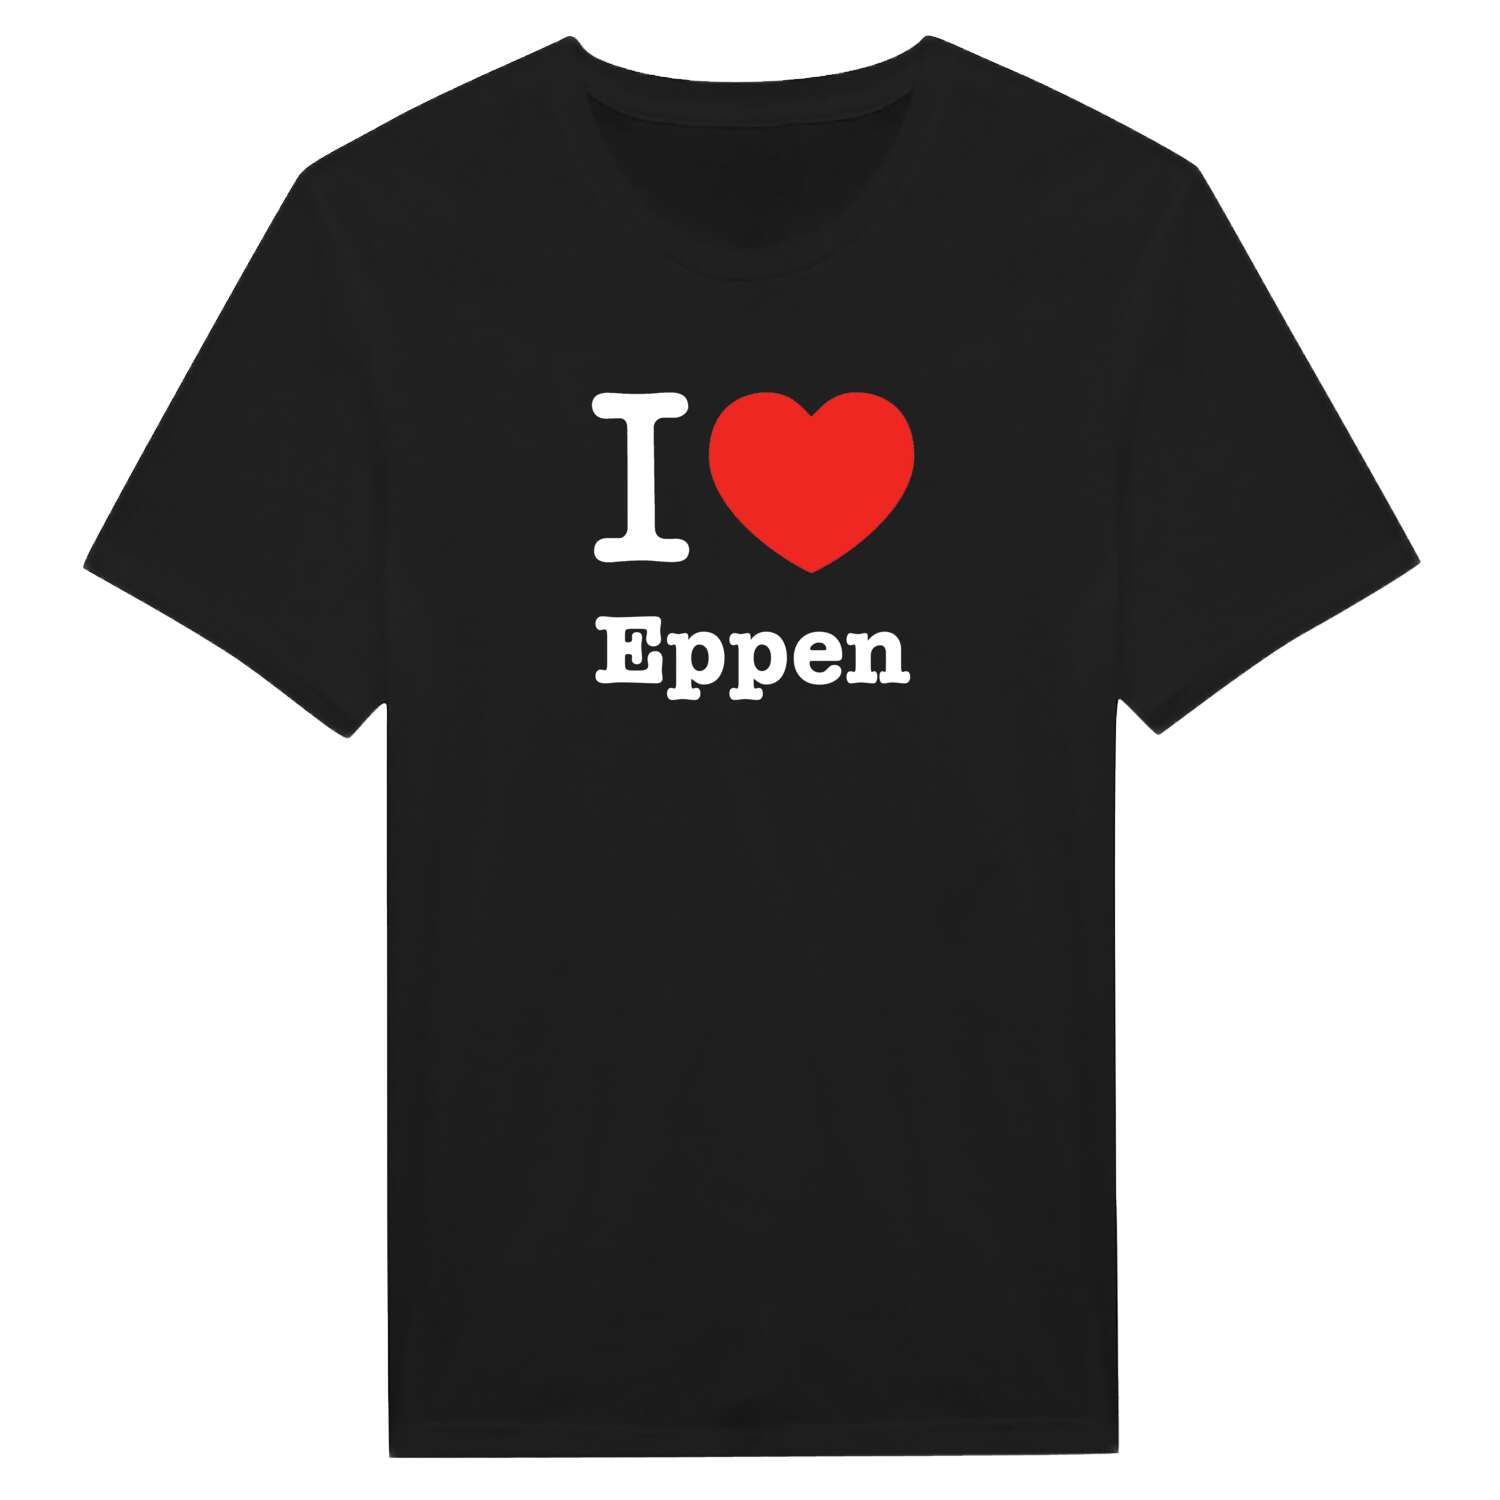 Eppen T-Shirt »I love«